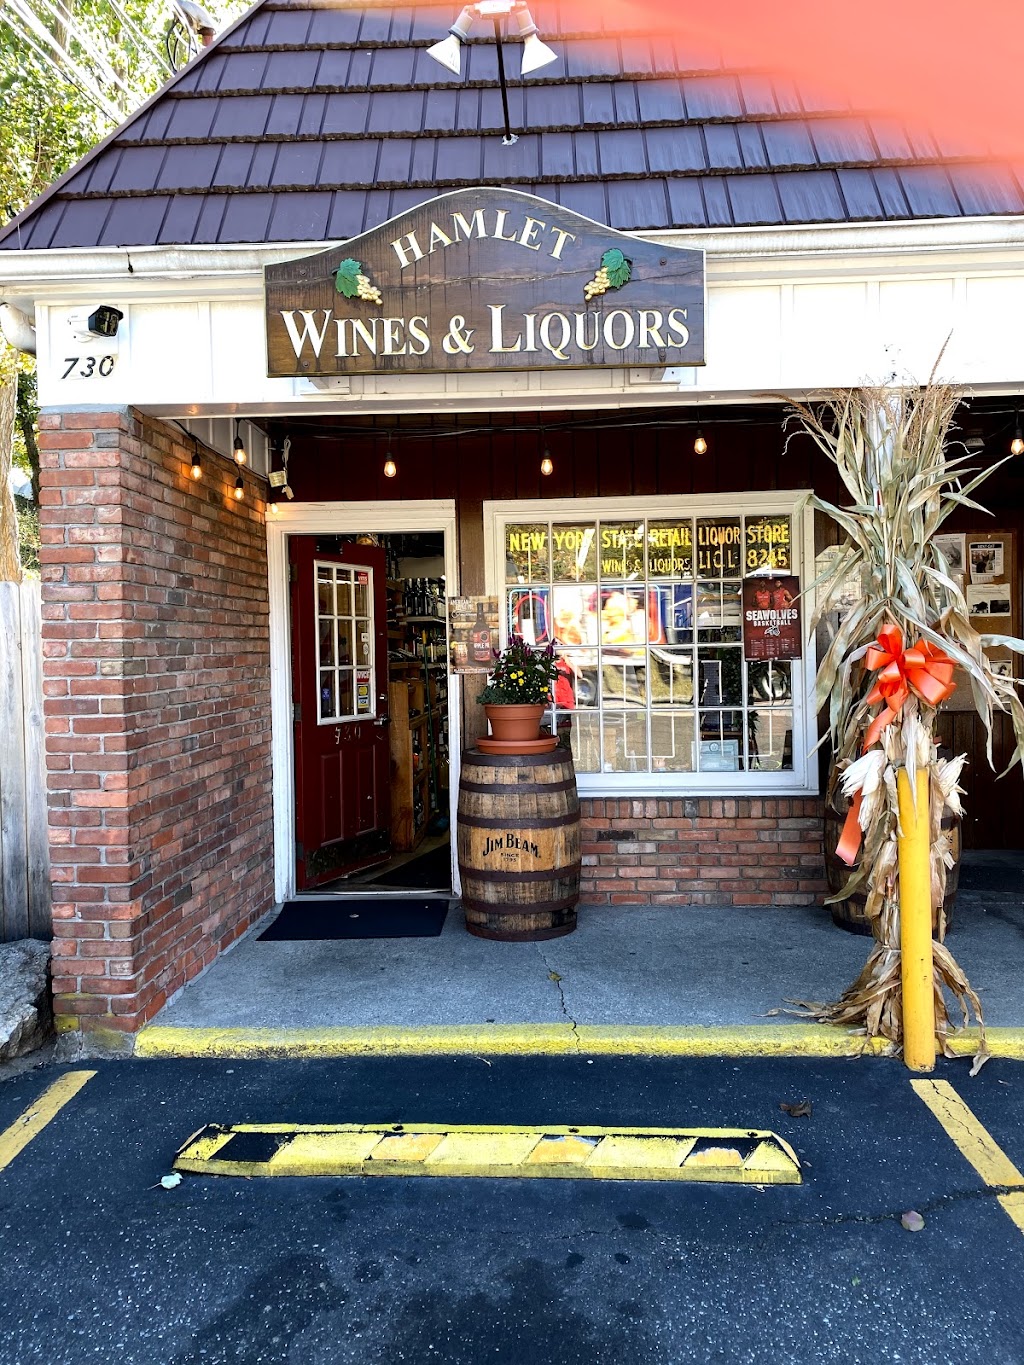 Hamlet Wines & Liquors | 730 NY-25A, Setauket- East Setauket, NY 11733 | Phone: (631) 751-3131